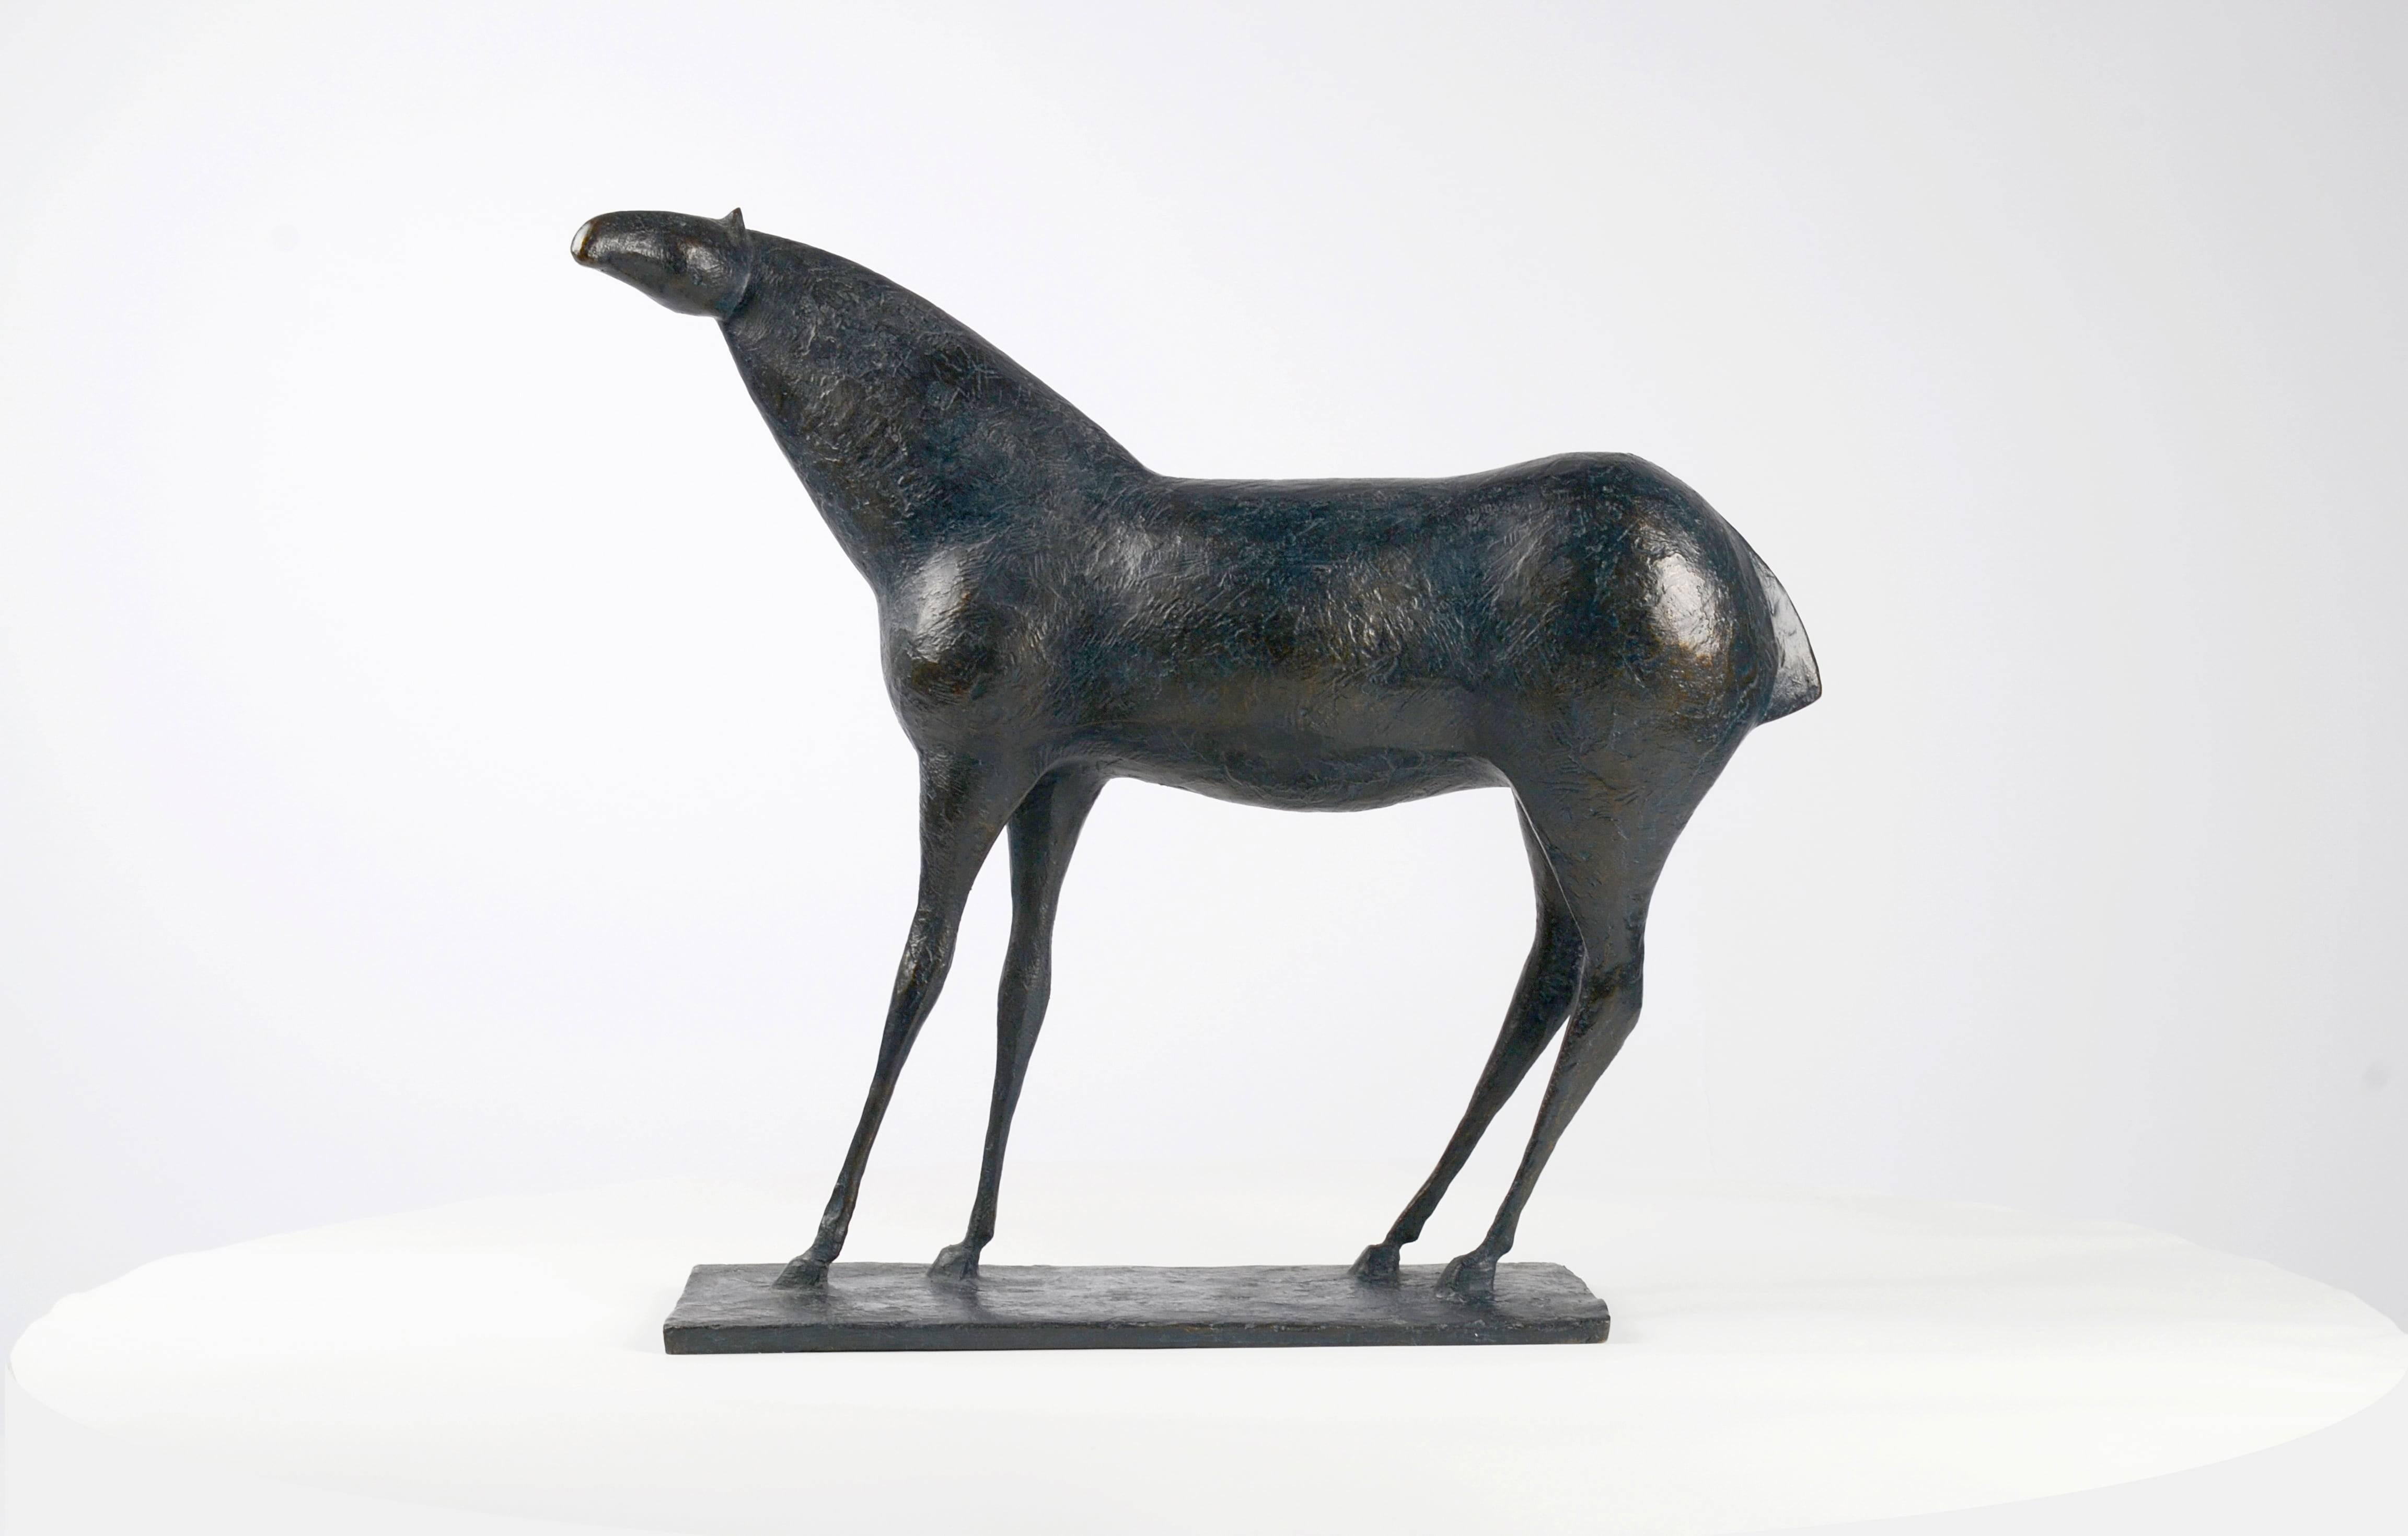 Cheval XIII est une sculpture en bronze de l'artiste contemporain français Pierre Yermia, dont les dimensions sont de 49 × 52 × 17 cm (19,3 × 20,5 × 6,7 in). 
La sculpture est signée et numérotée, elle fait partie d'une édition limitée à 8